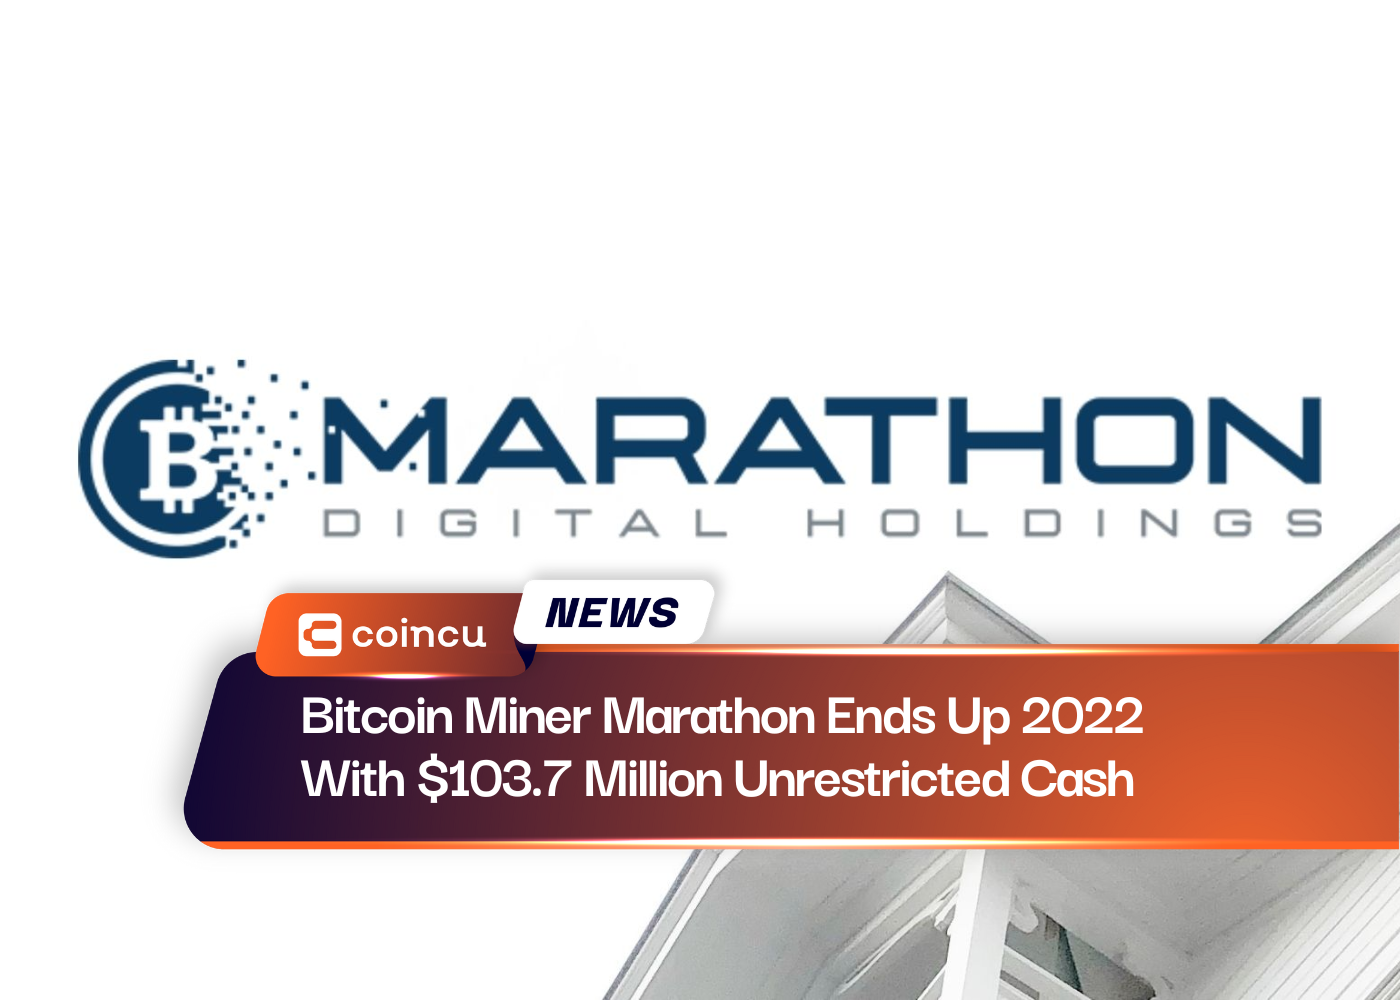 Maratona de mineração de Bitcoin termina em 2022 com US$ 103.7 milhões em dinheiro irrestrito